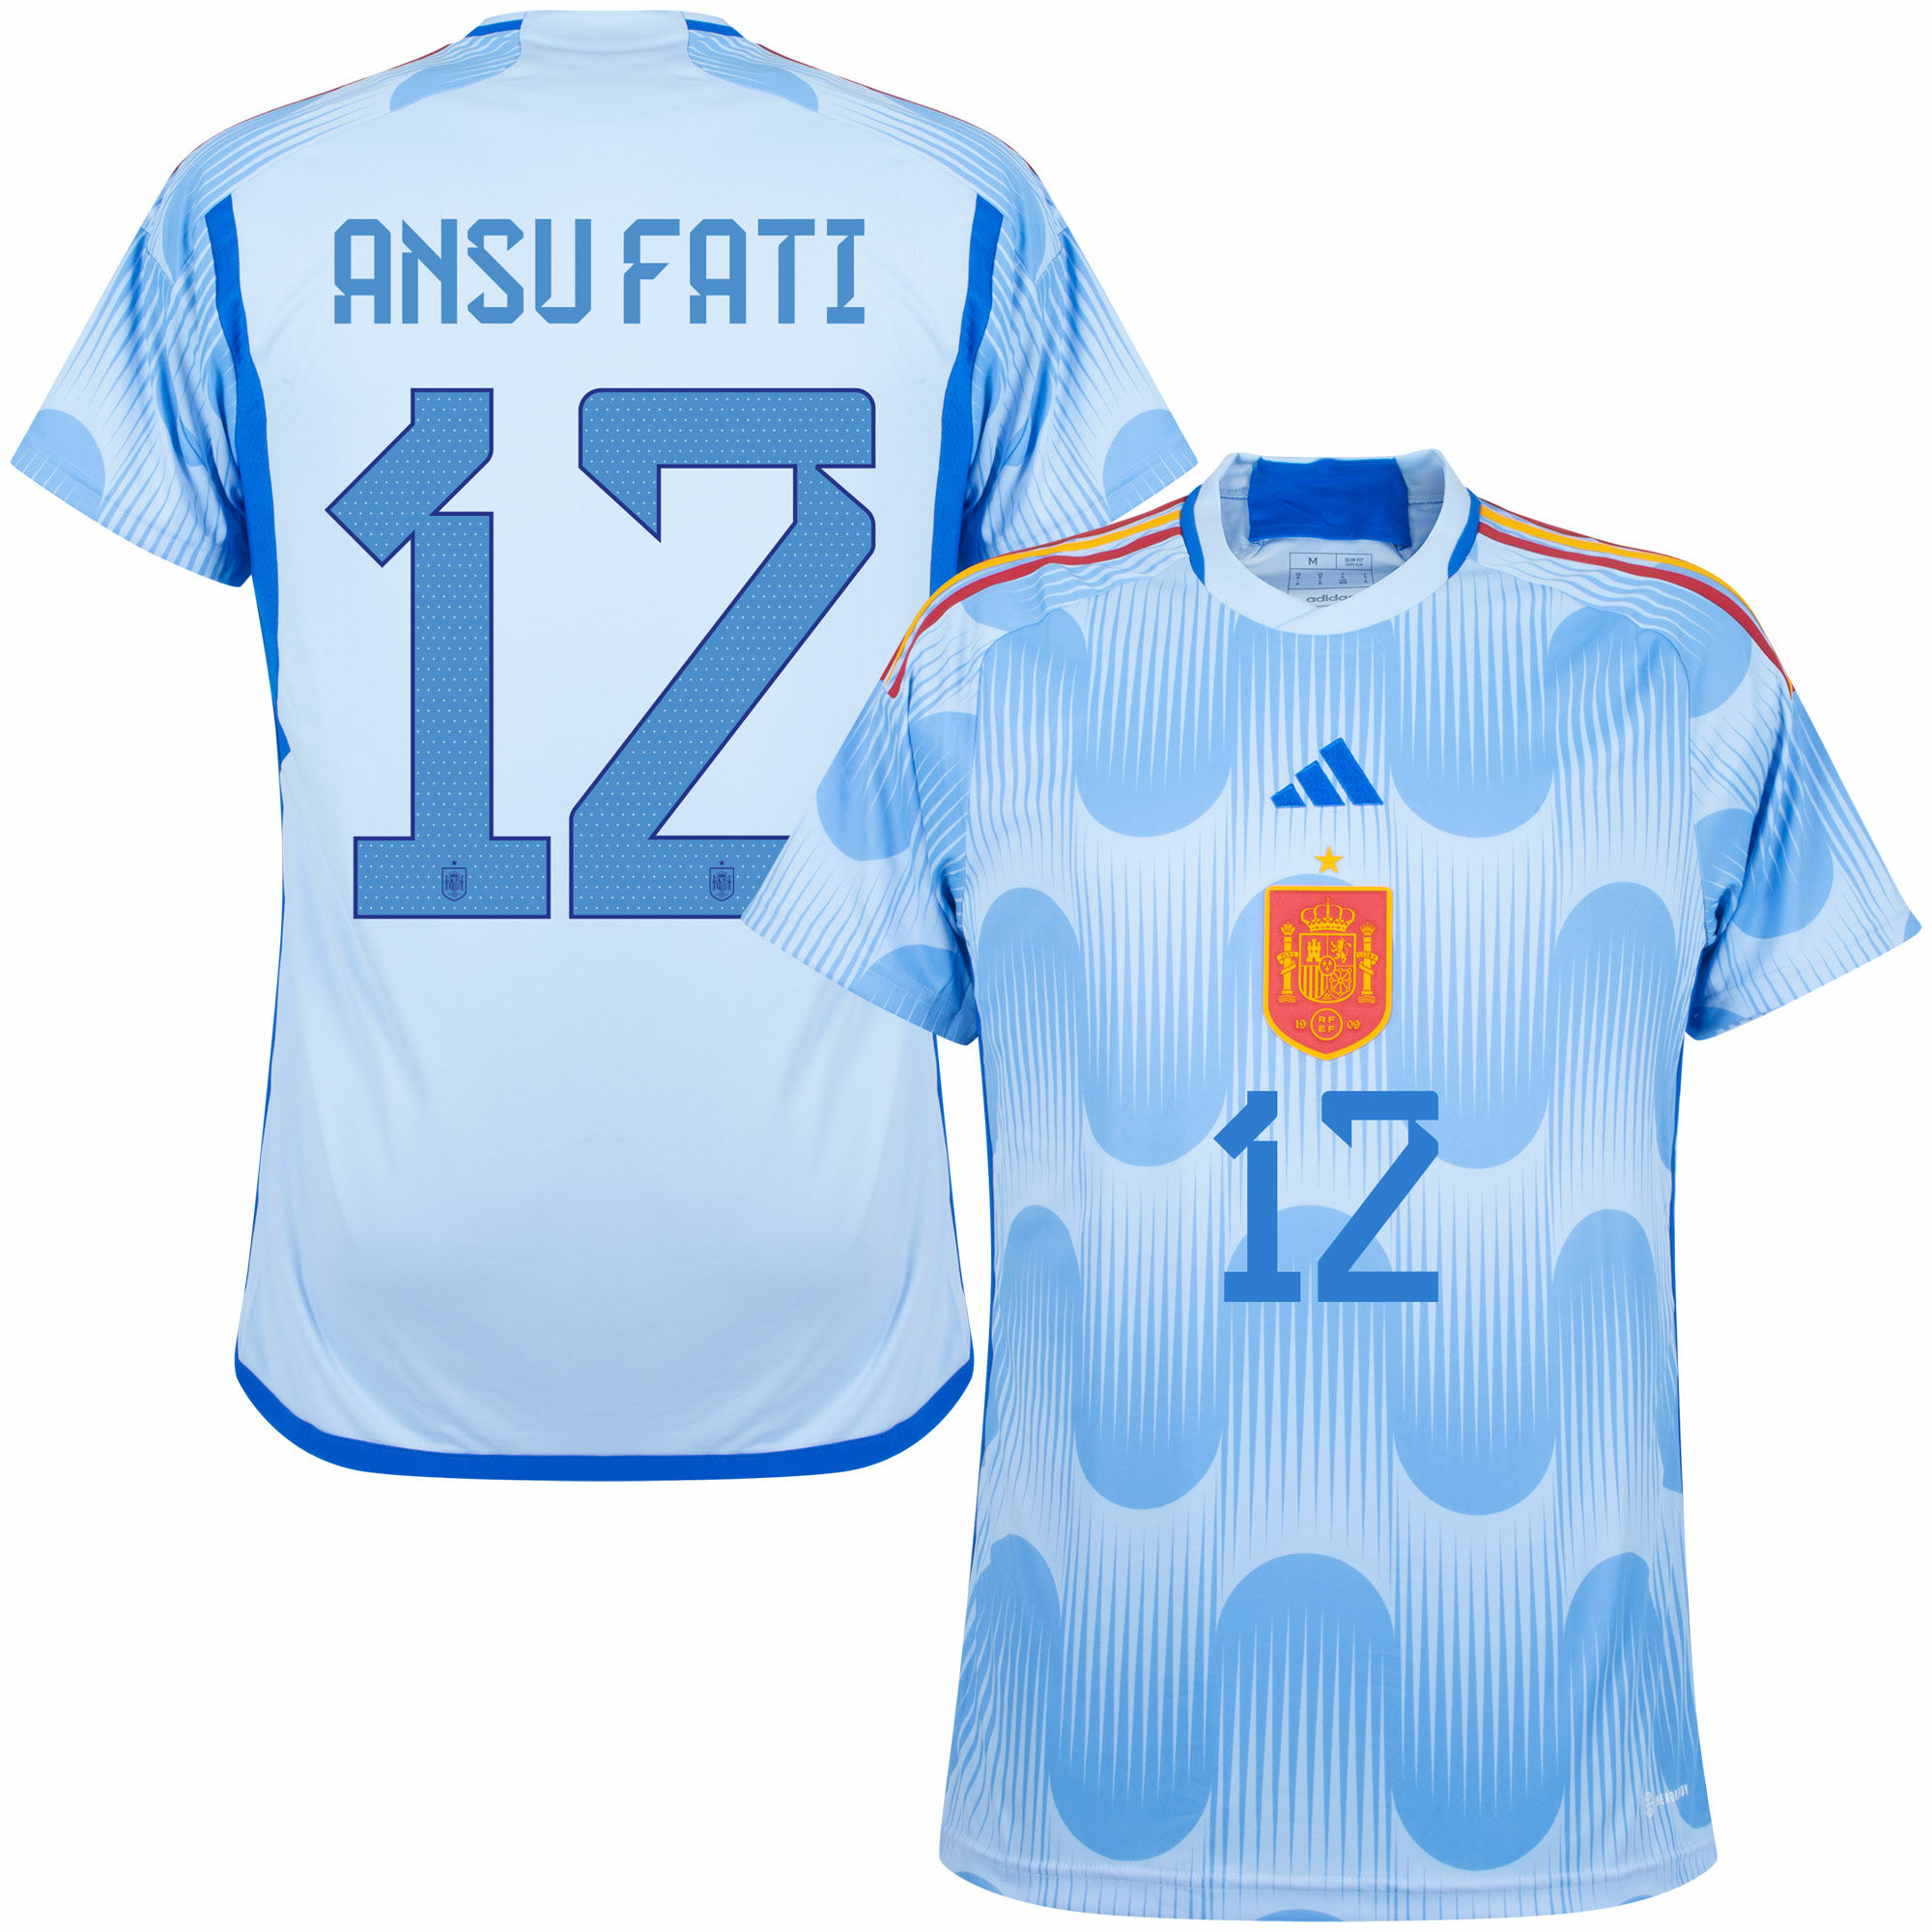 Španělsko - Dres fotbalový - oficiální potisk, Ansu Fati, číslo 12, sezóna 2022/23, modrý, venkovní